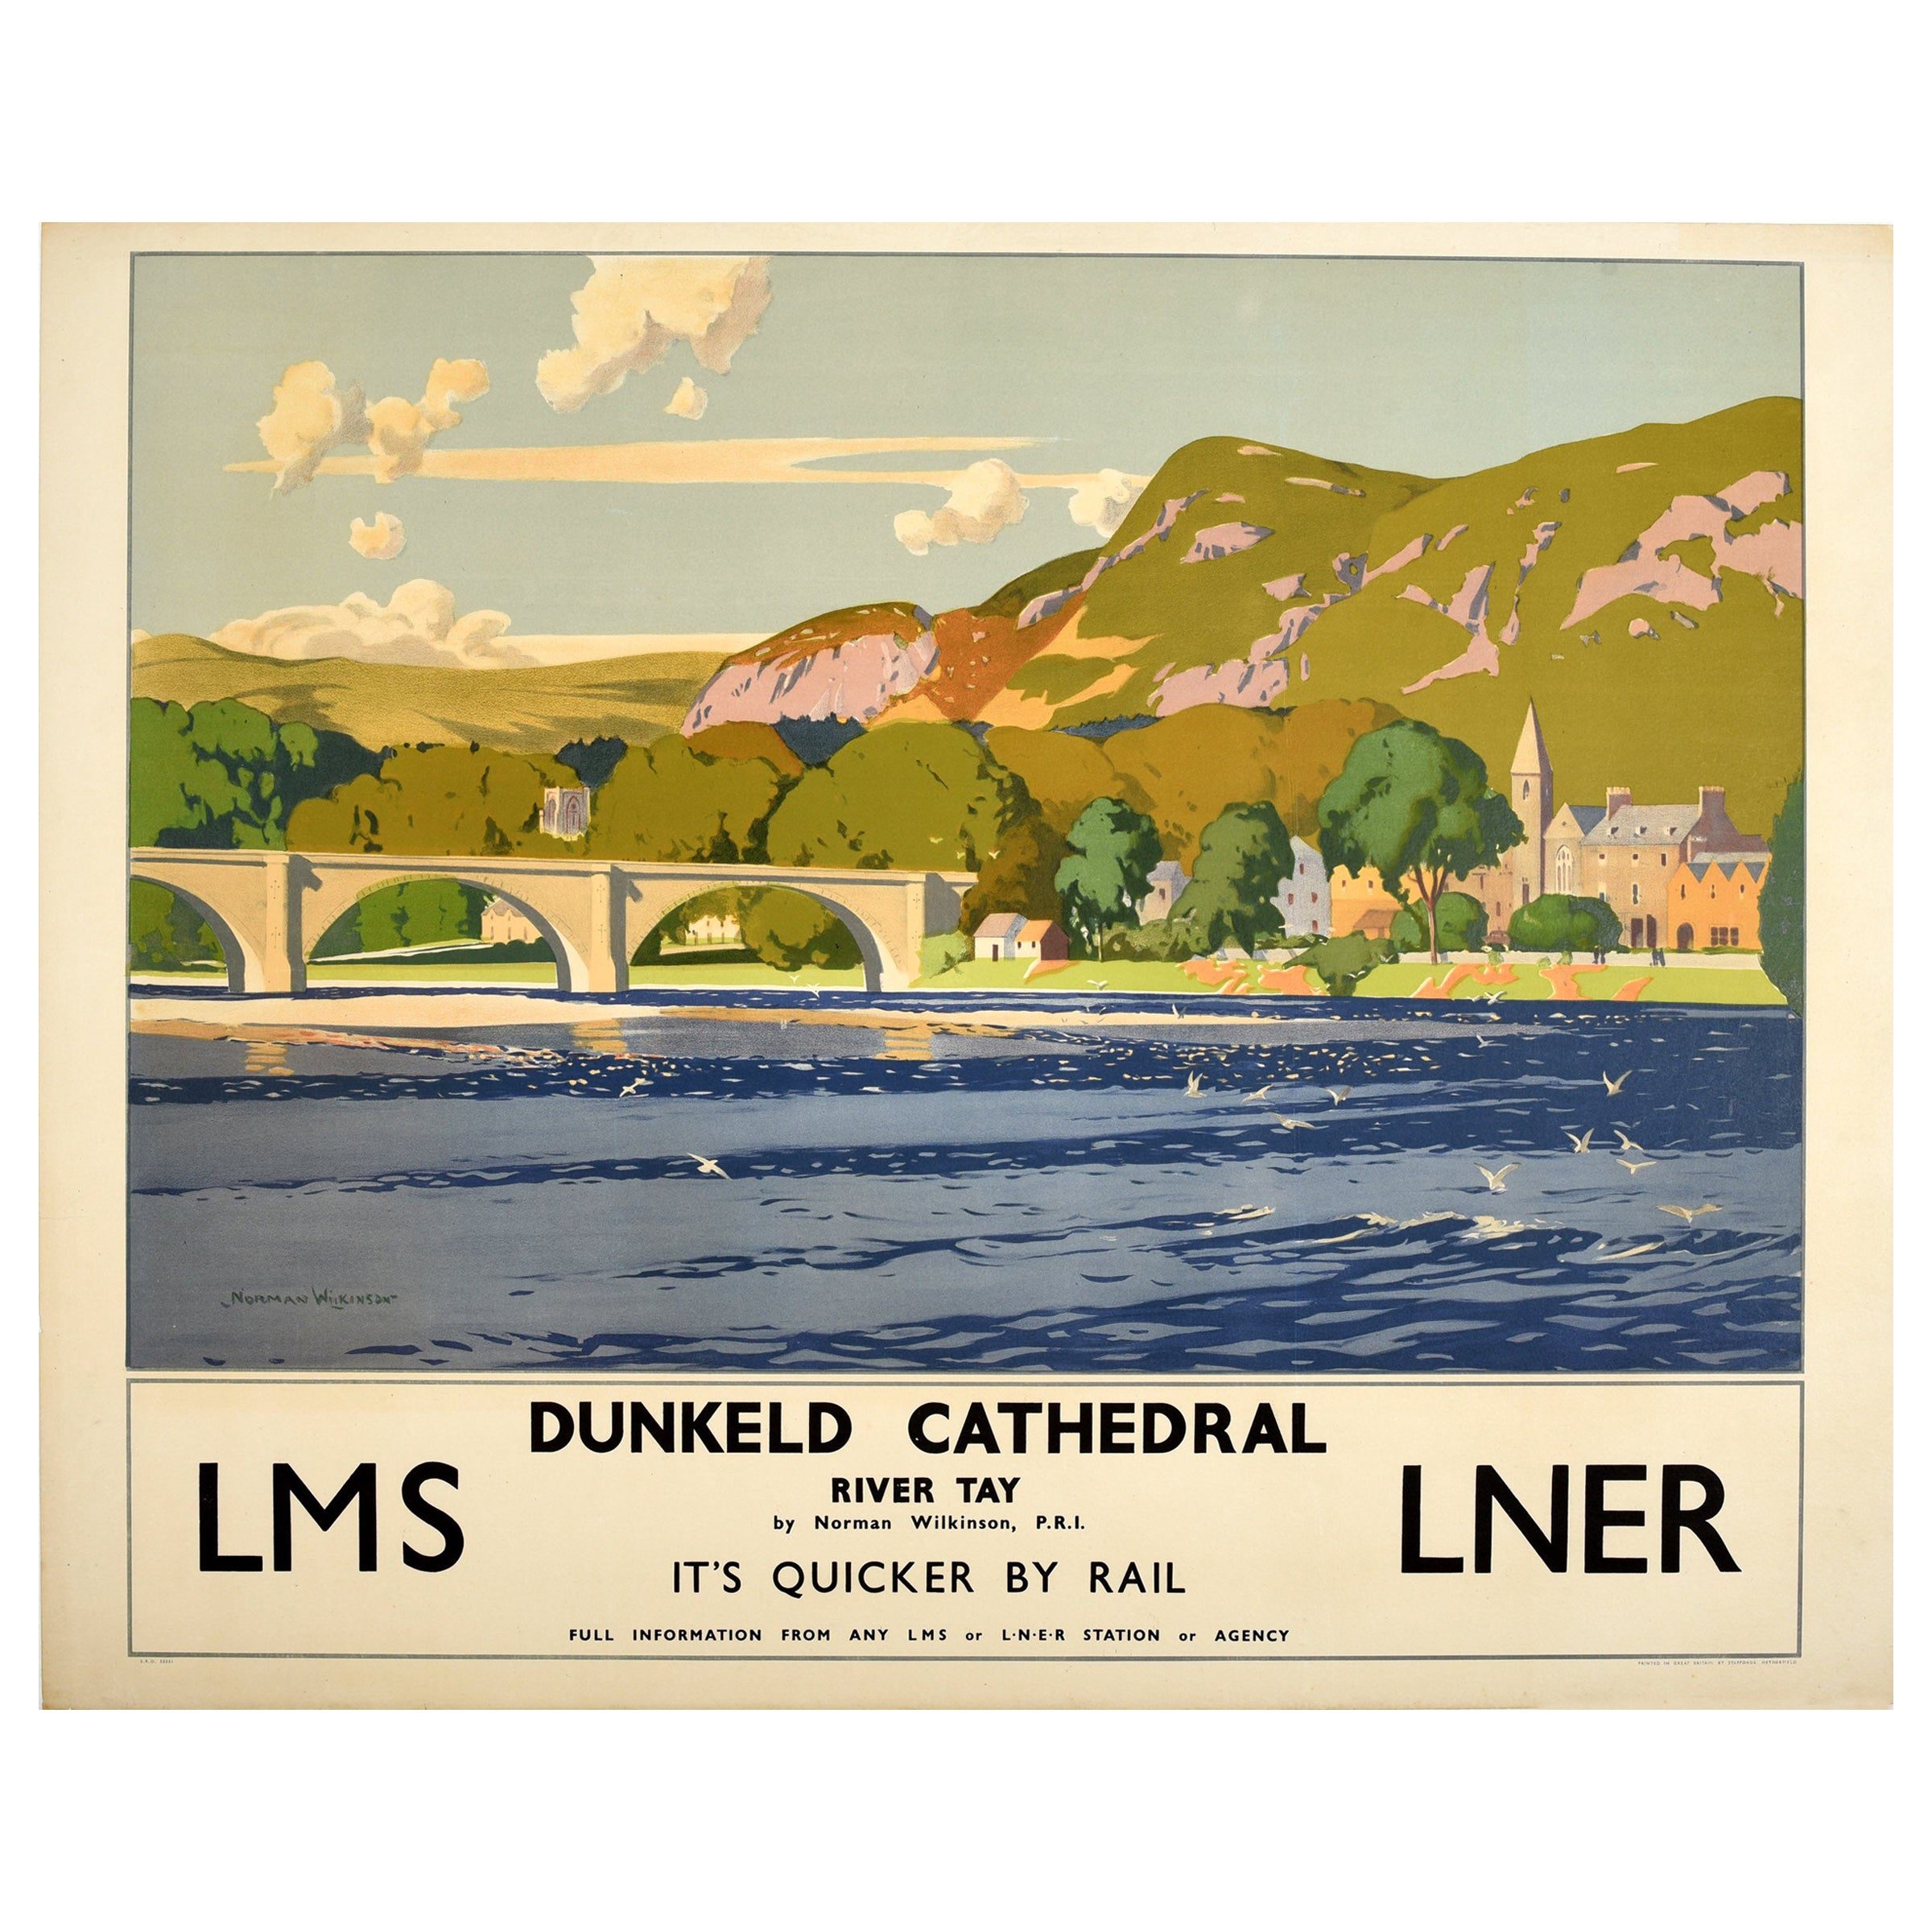 Original Vintage Poster Dunkeld Cathedral River Tay LMS LNER Railway Travel Art